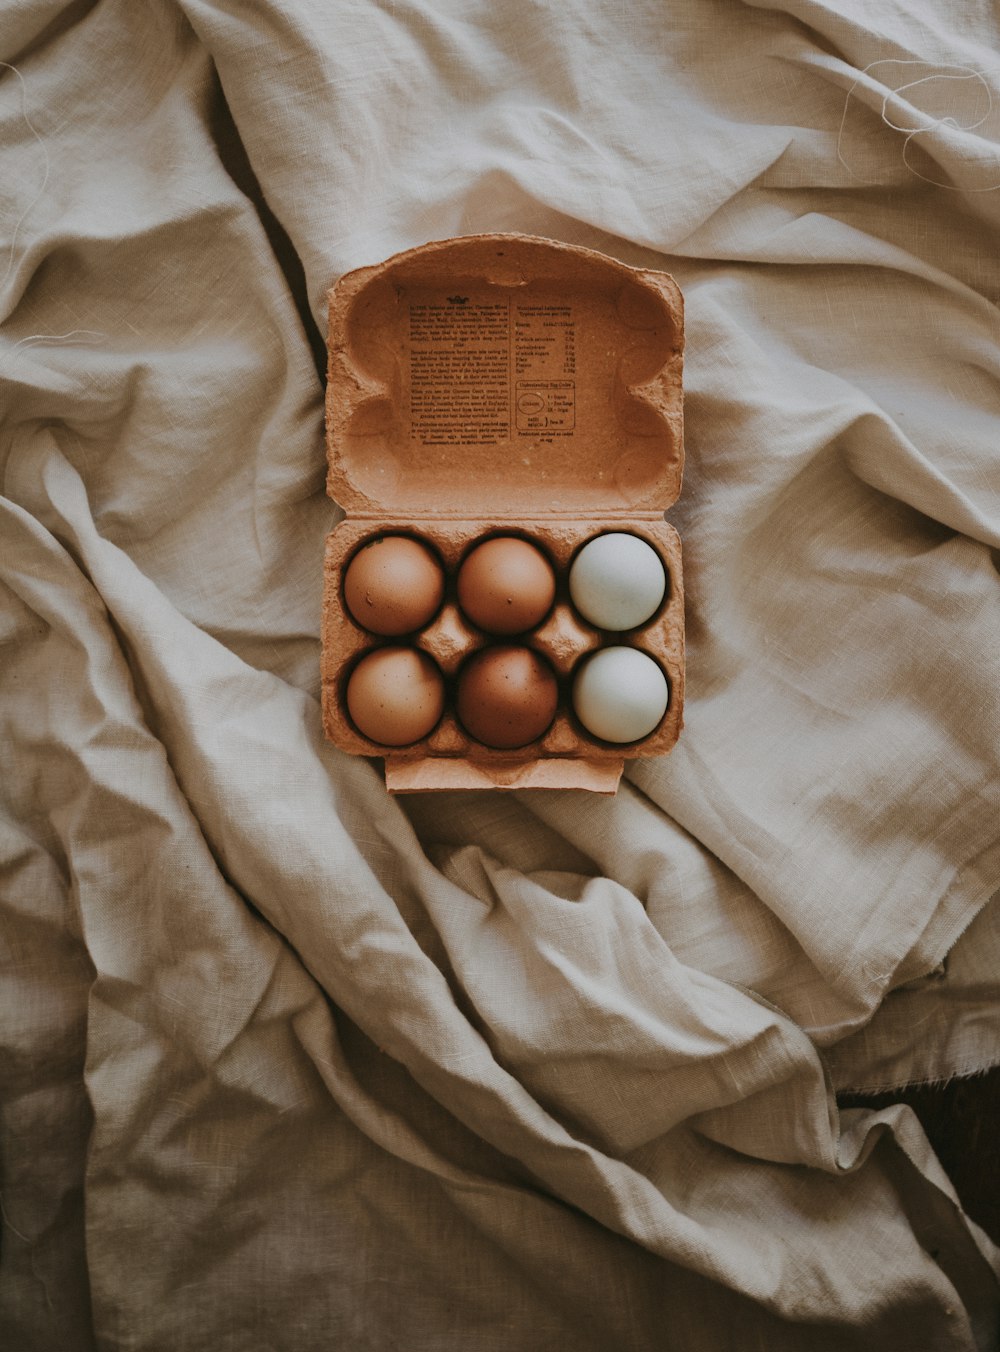 Sechs Eier in der Schachtel